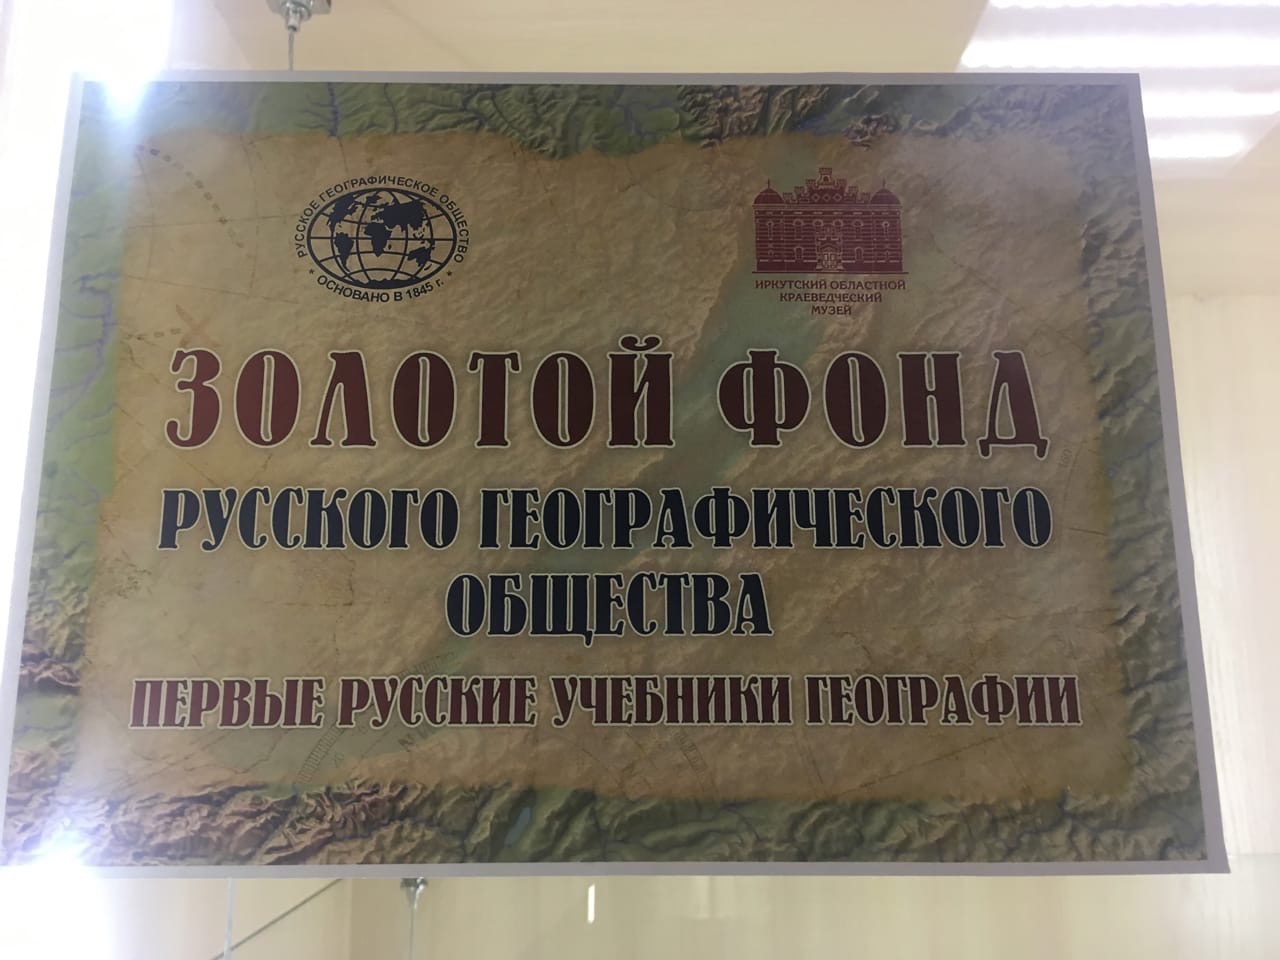 Первые русские учебники географии – афиша